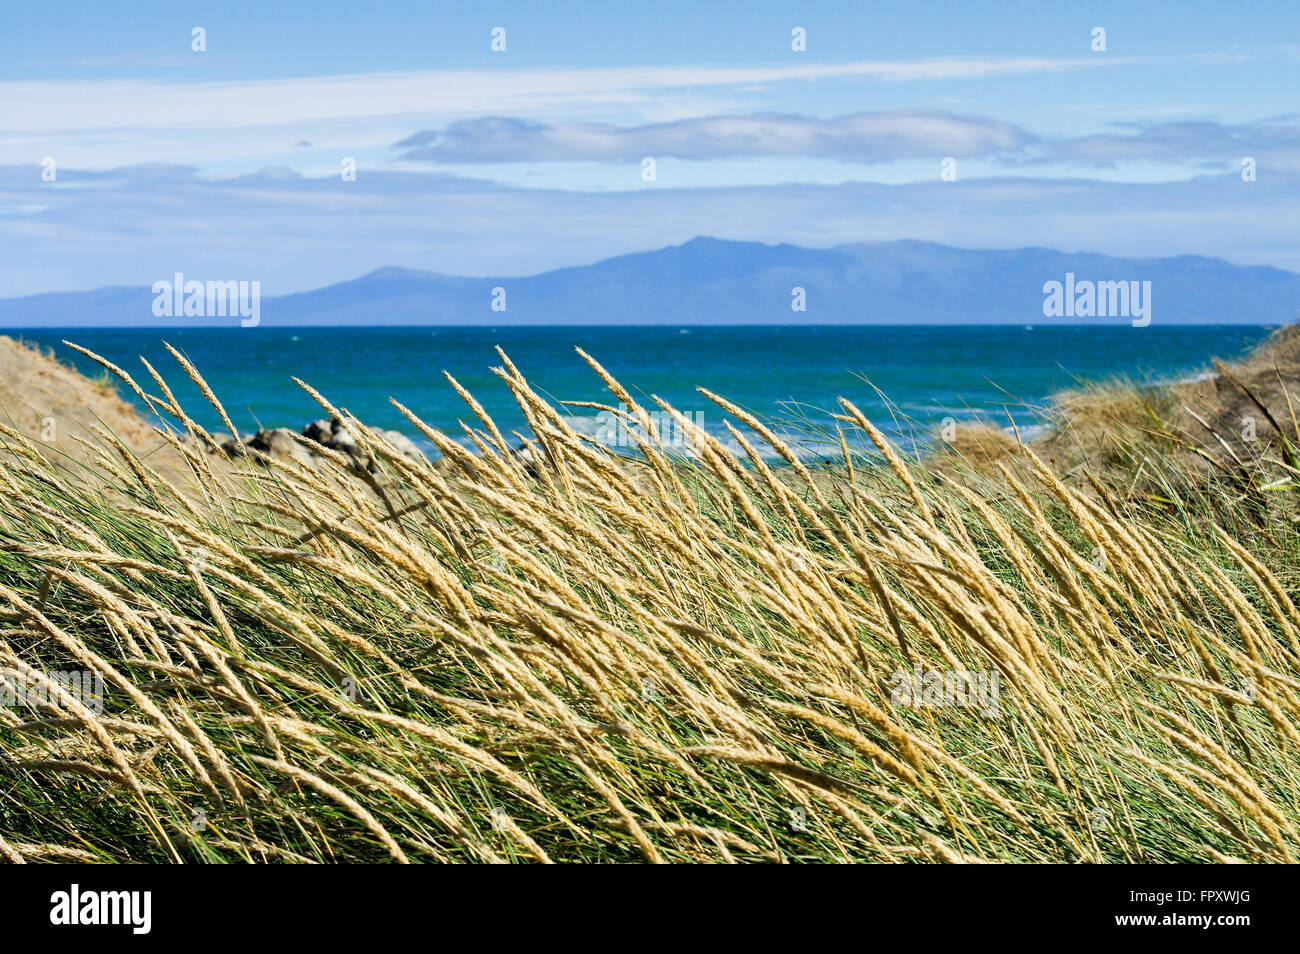 Vue sur l'île de Stewart à travers le détroit de Foveaux d'une plage Howells Point - Riverton, Nouvelle-Zélande Banque D'Images